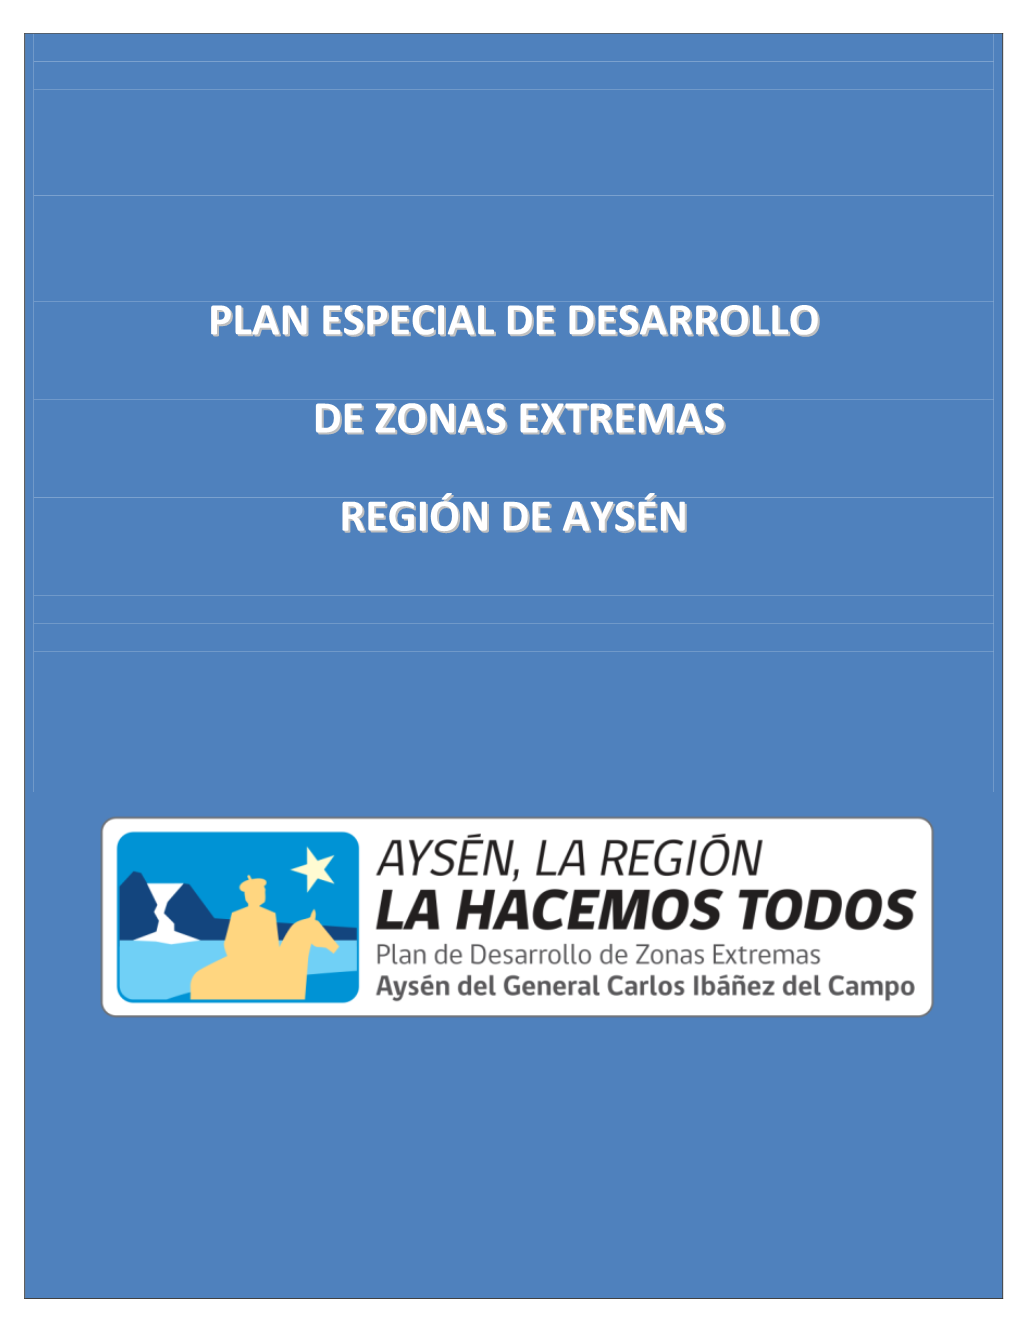 Plan Especial De Desarrollo De Zonas Extremas Region De Aysen.Pdf